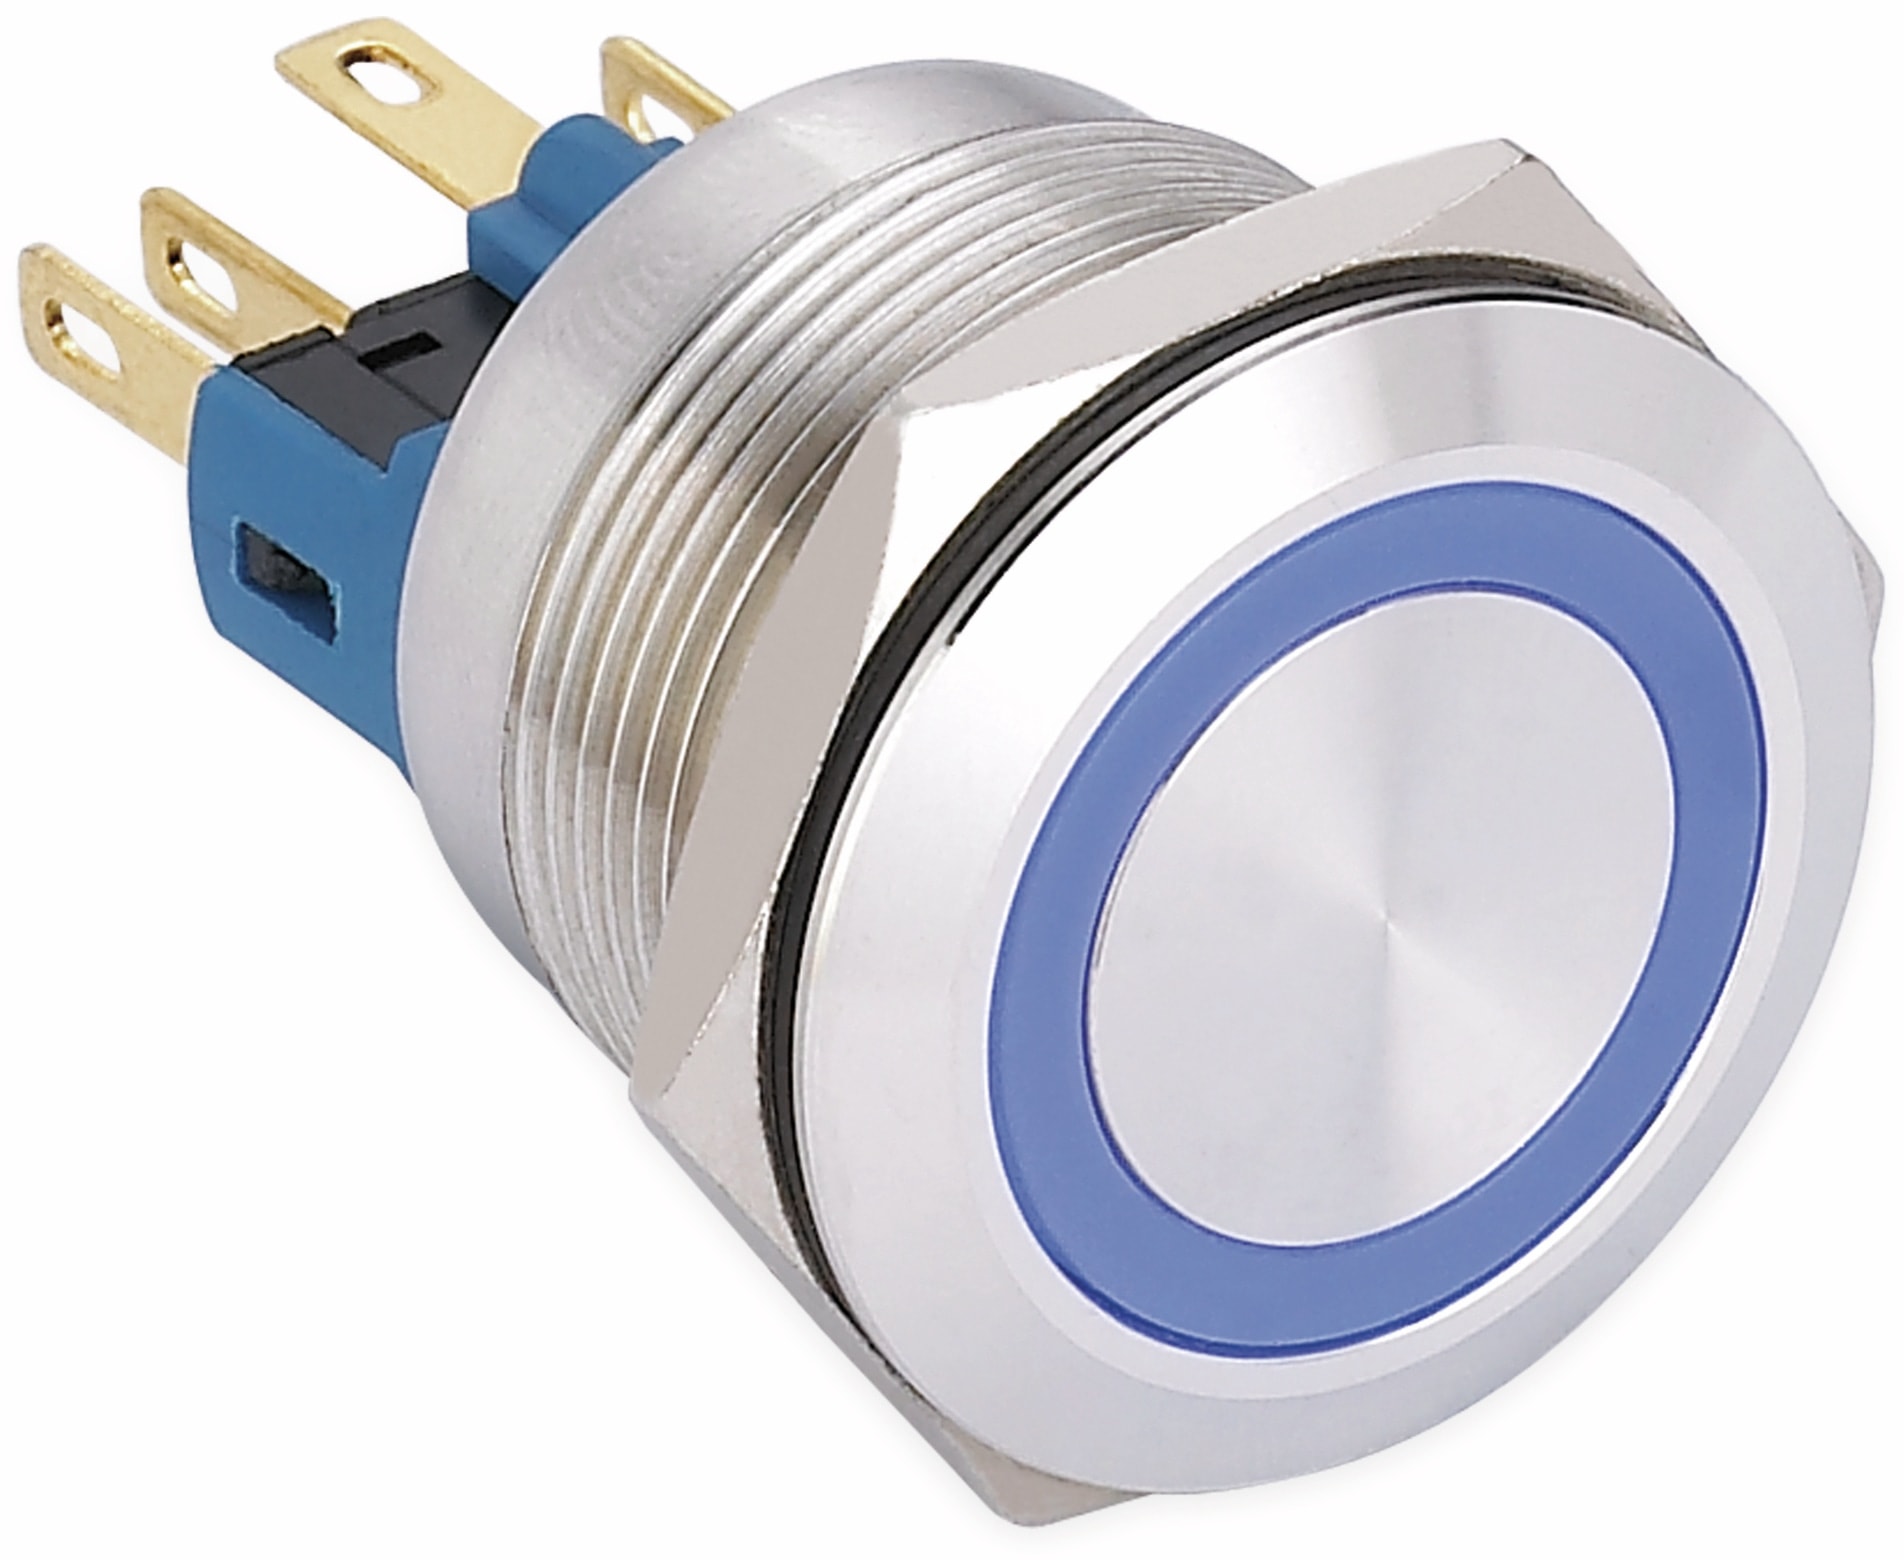 ONPOW Schalter, 24 V/DC, 1x Off/On, Beleuchtung blau, Lötanschluss, flach rund, Edelstahl, 22 mm